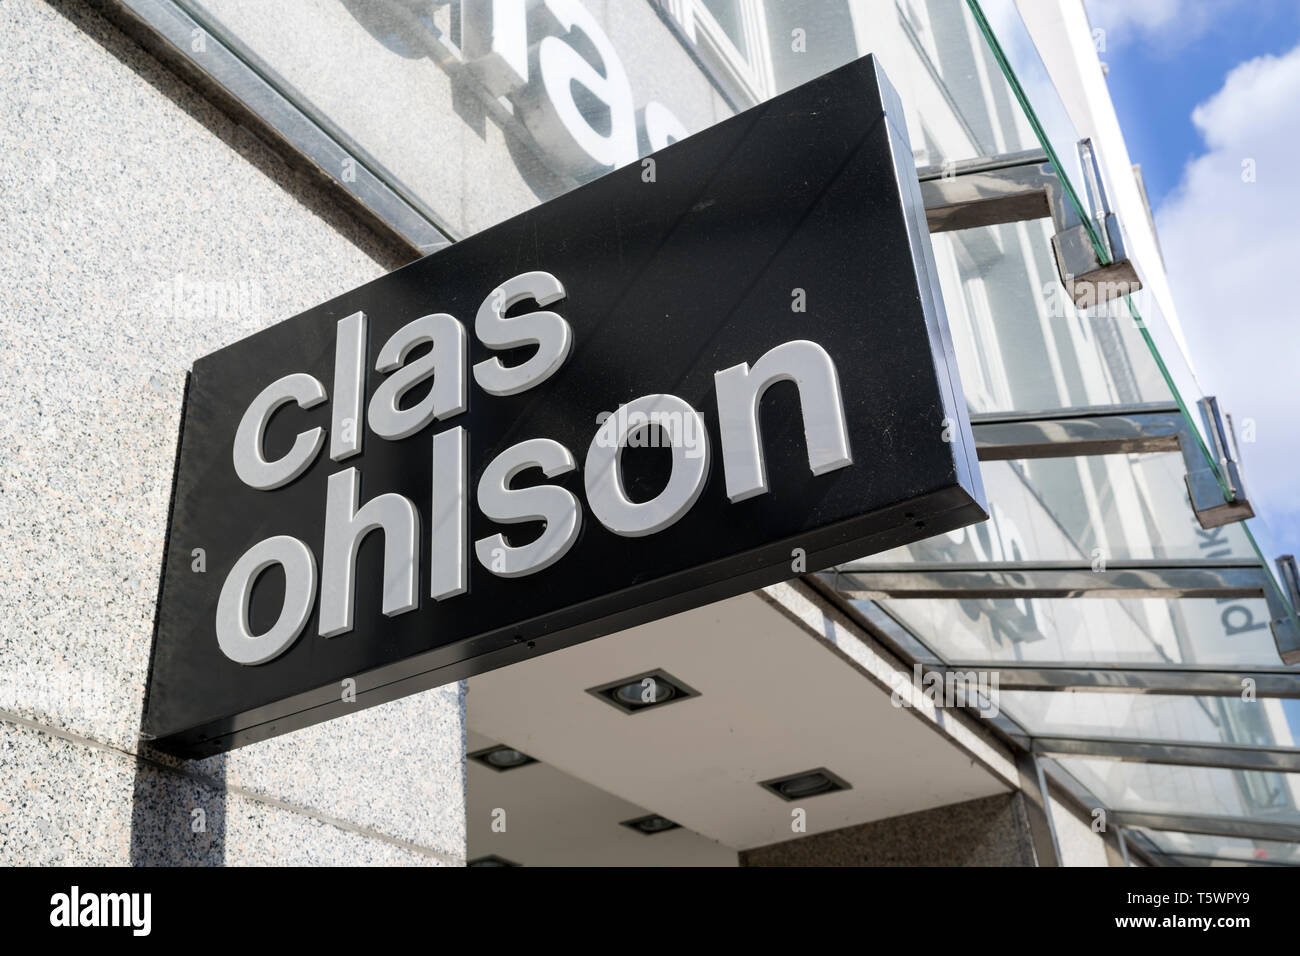 Clas Ohlson Niederlassung in Hamburg, Deutschland. Clas Ohlson ist eine schwedische Hardware store Kette und Versandunternehmen. Stockfoto